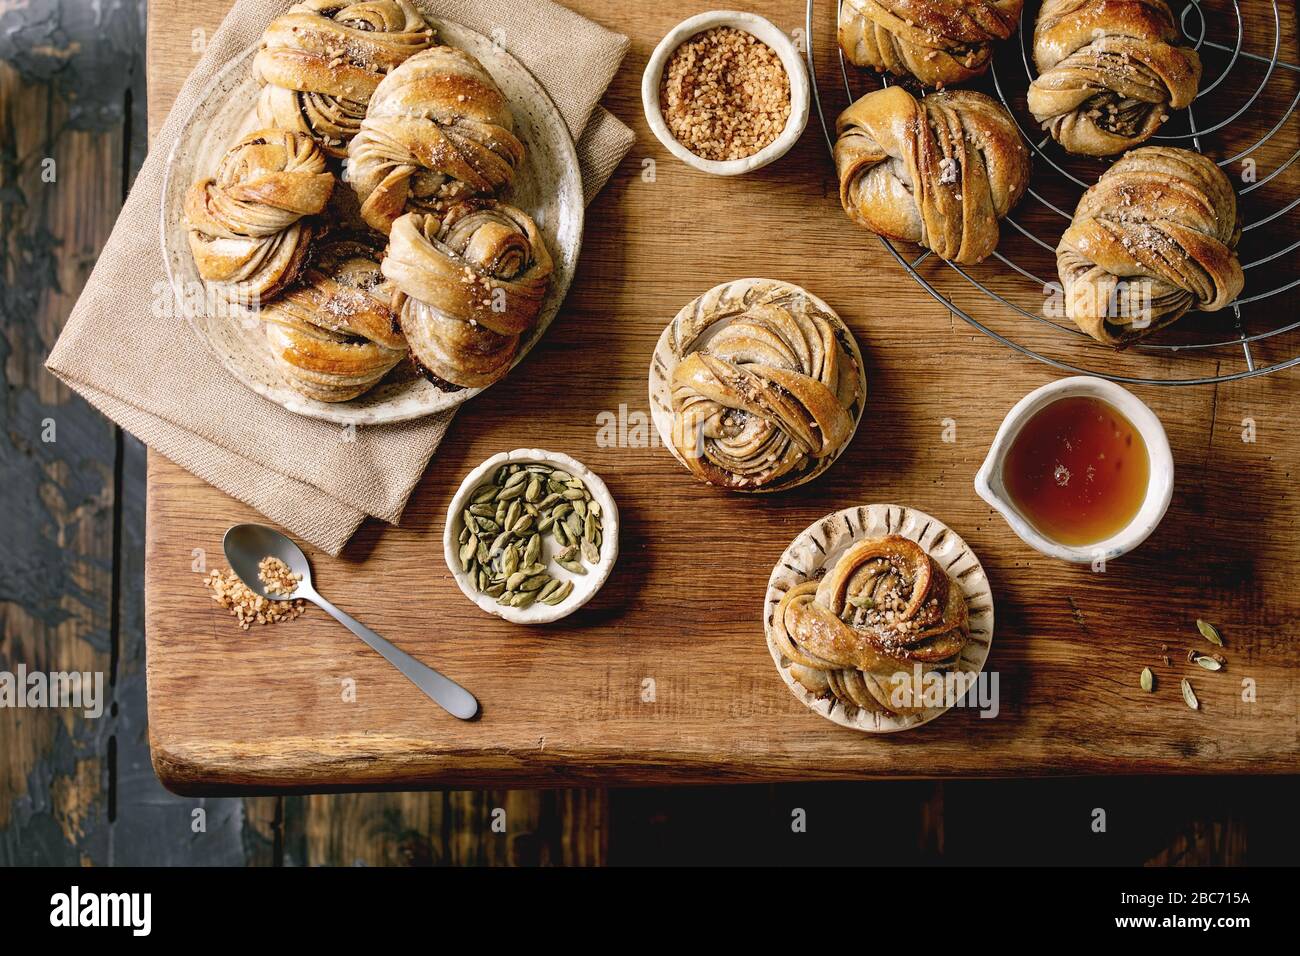 Des petits pains suédois à cardamome Kanelbulle Banque D'Images